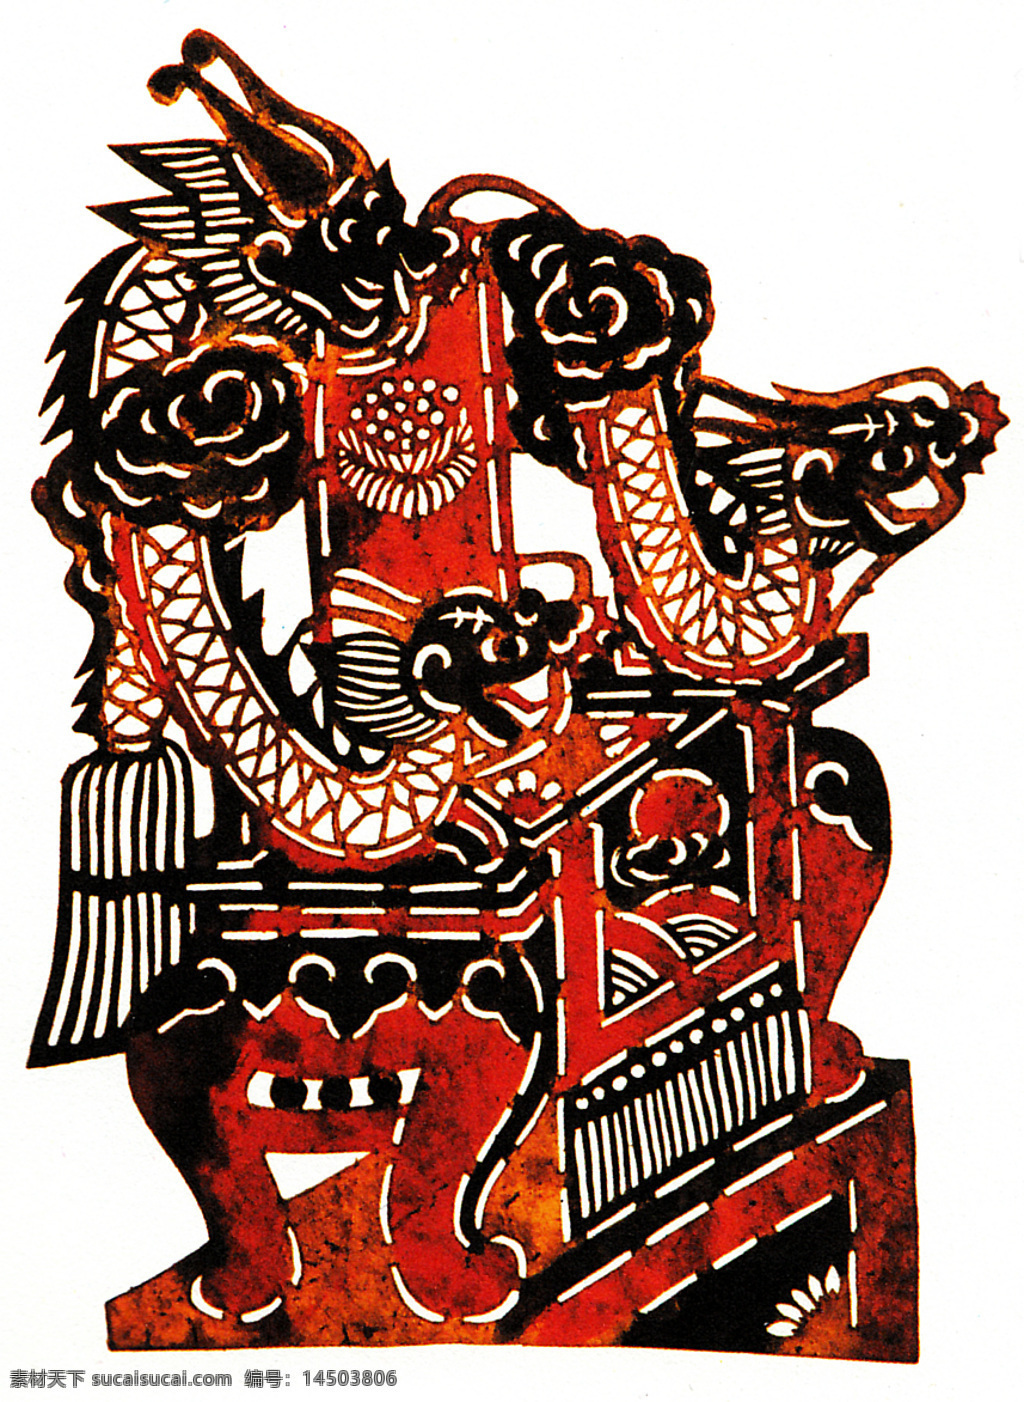 皮影 民间艺术 龙椅 驴皮 黑龙江省 海伦市 设计素材 皮影专辑 民间美术 书画美术 白色